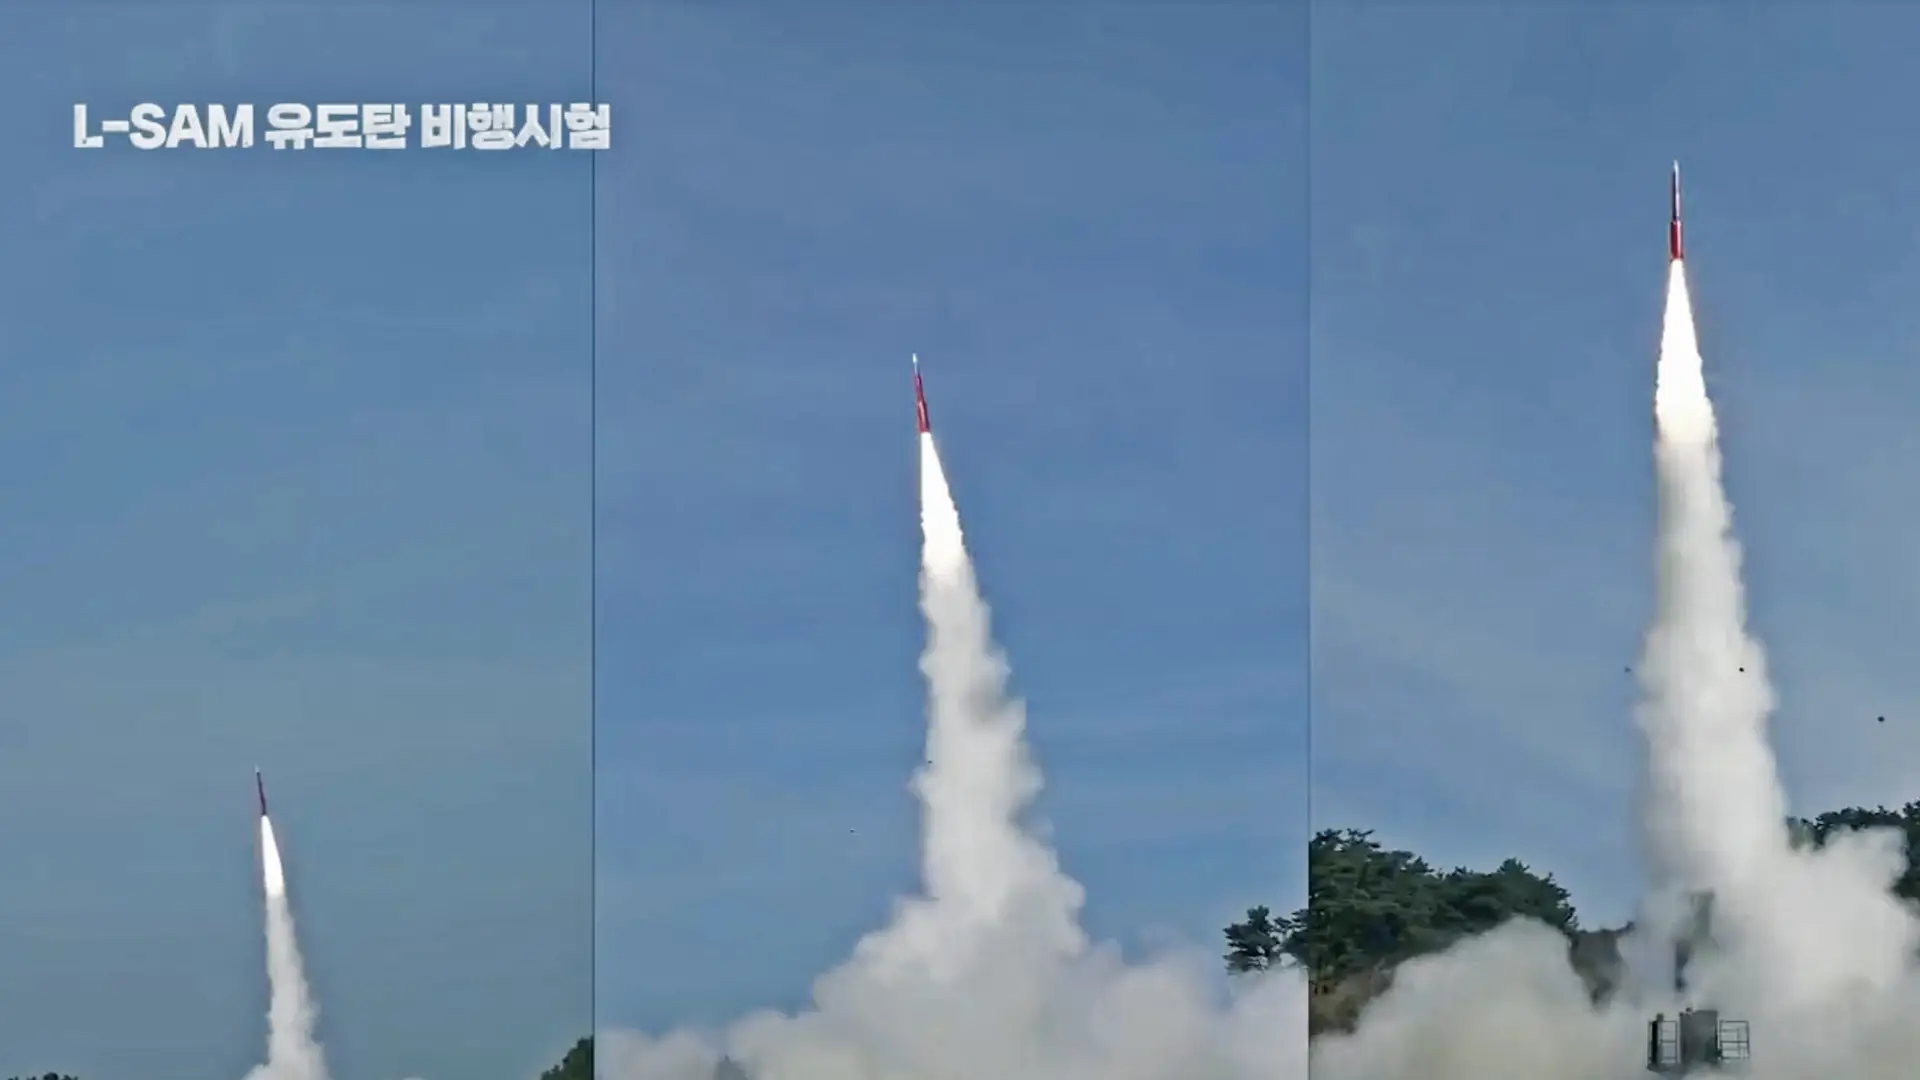 Südkorea testete das ballistische Raketenabwehrsystem L-SAM, das ballistische Raketen in bis zu 60 Kilometern Höhe abfangen kann